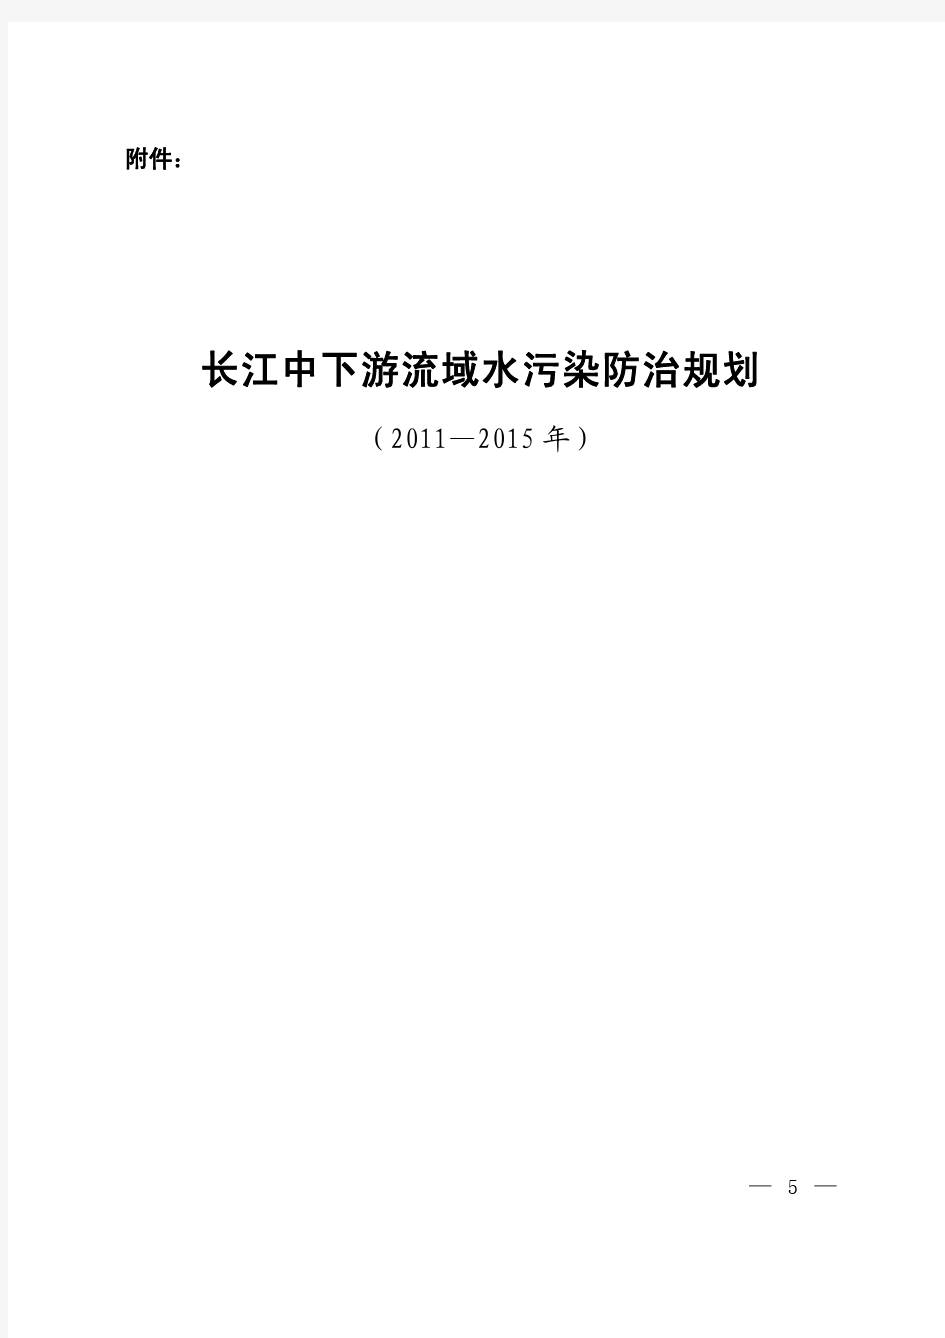 长江中下游流域水污染防治规划2011-2015